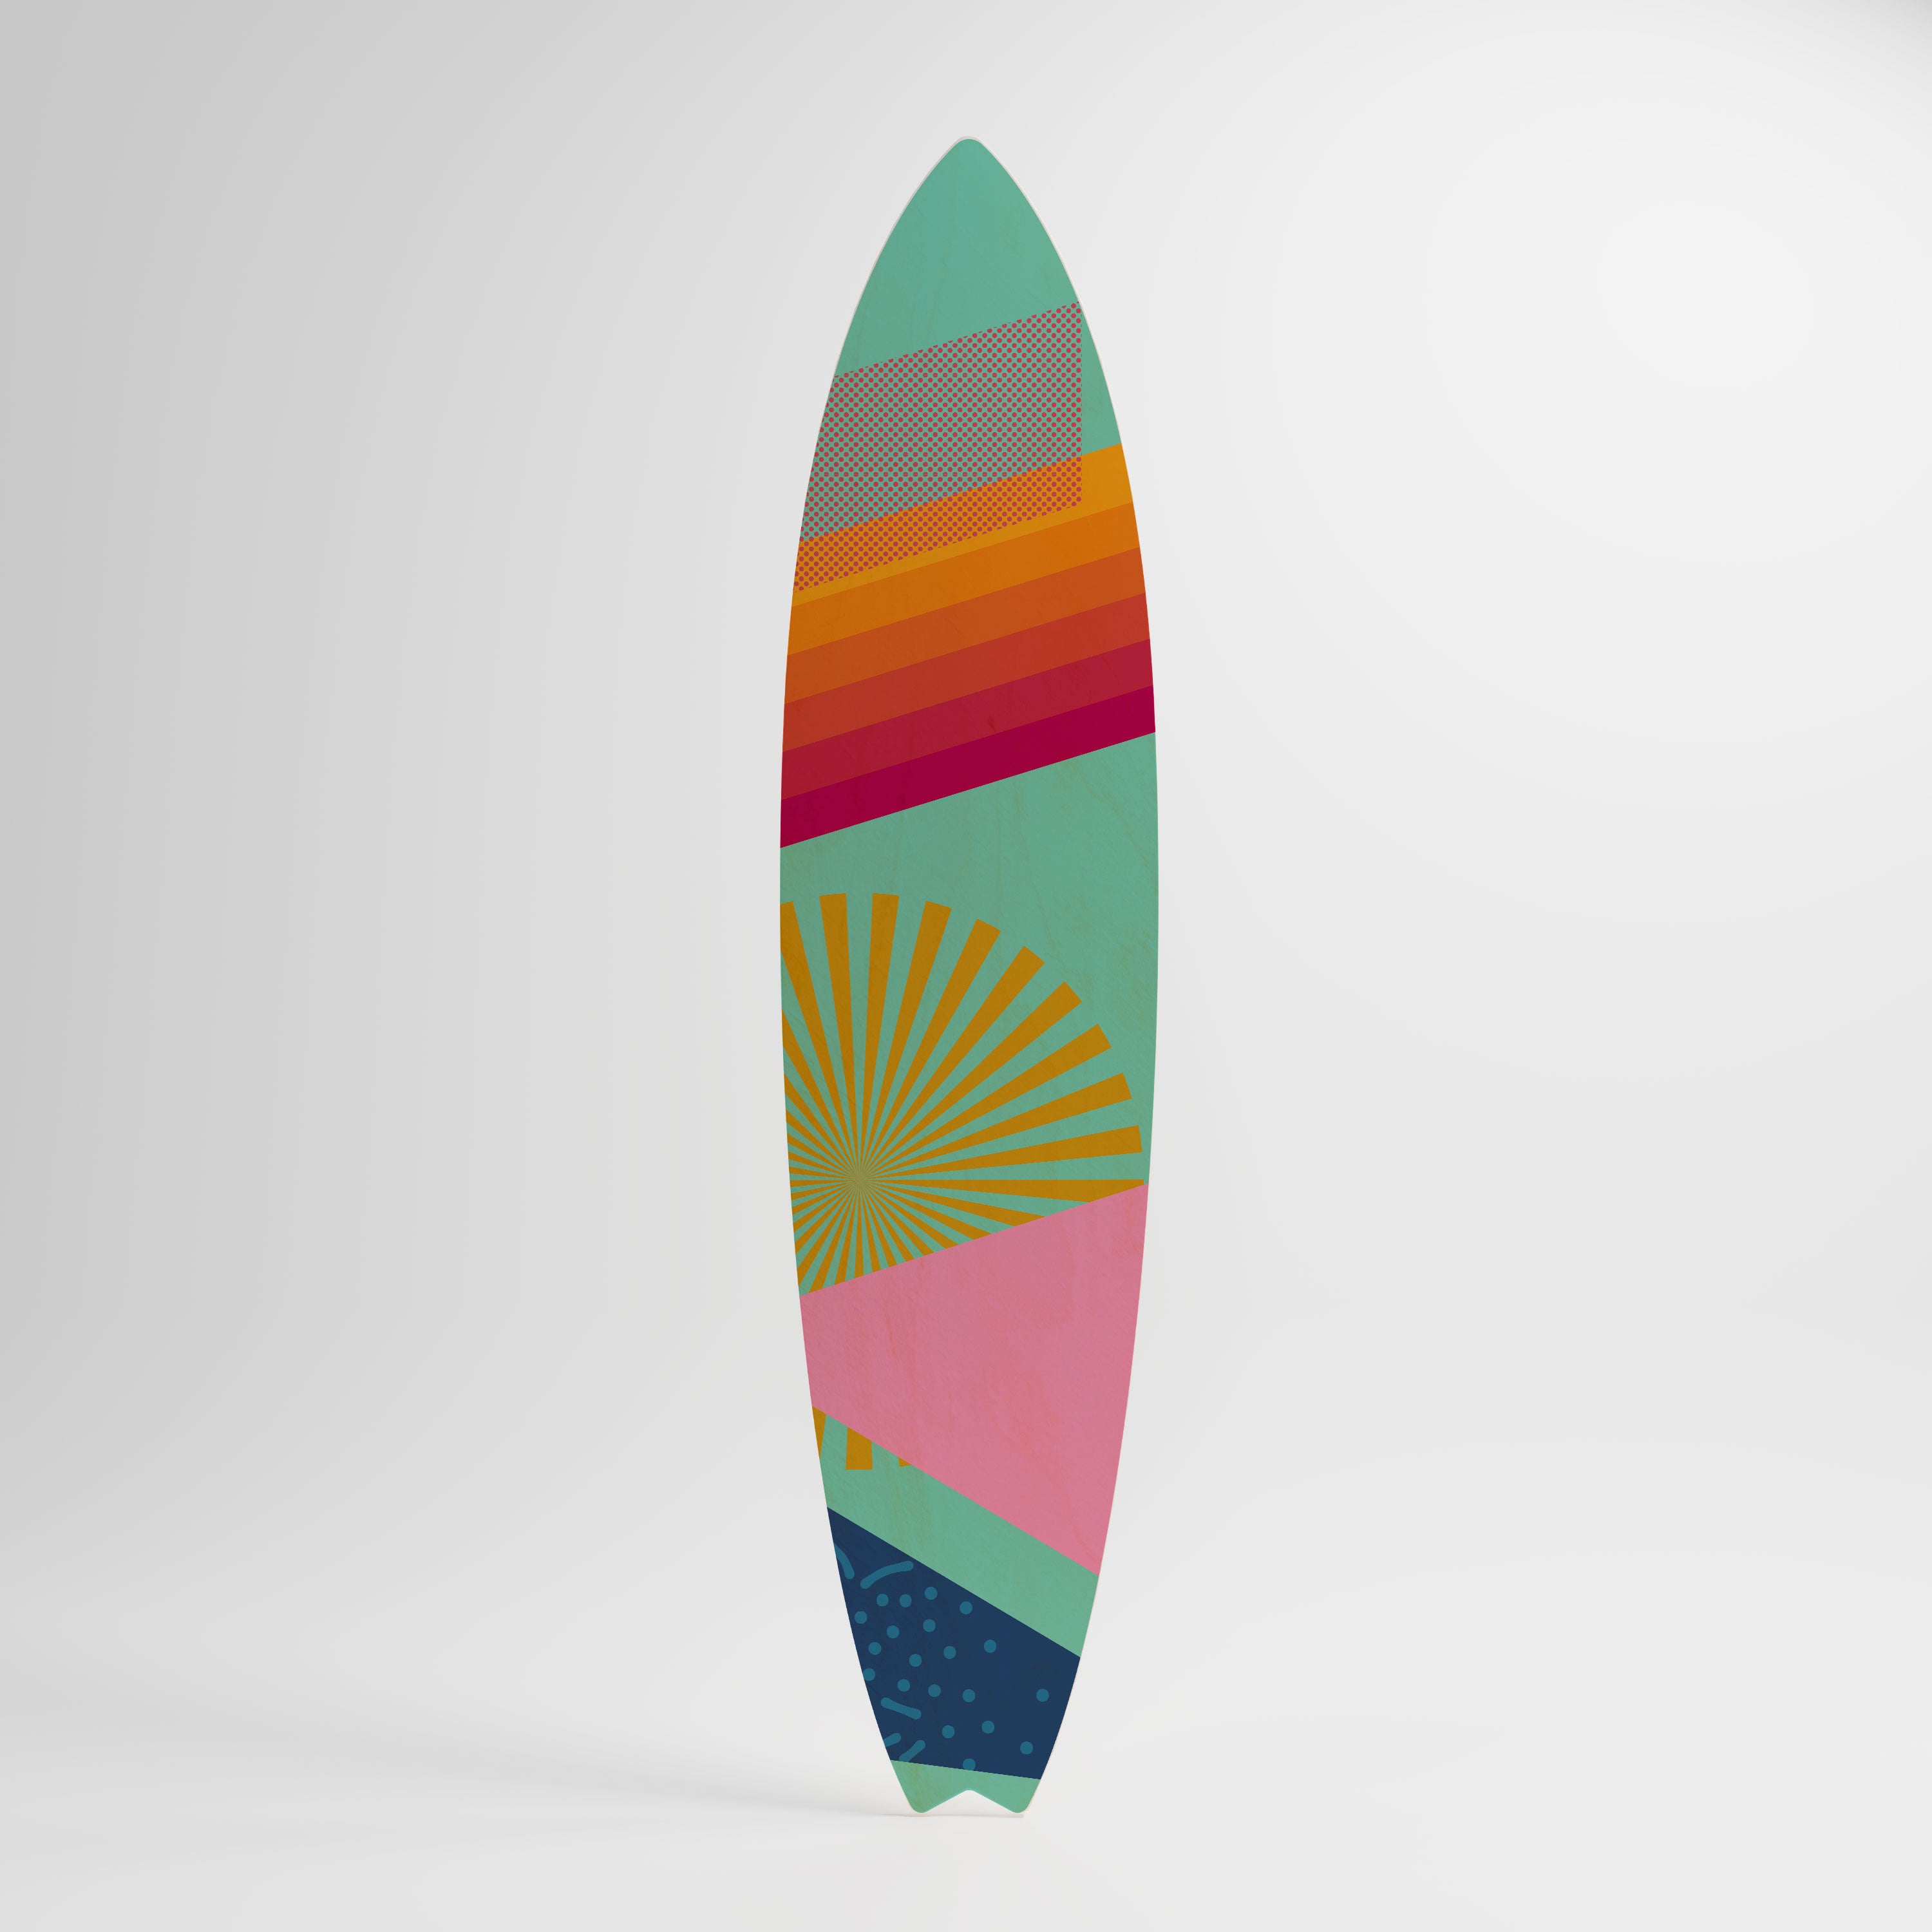 NEW DAYLIGHT Obraz - deska surfingowa